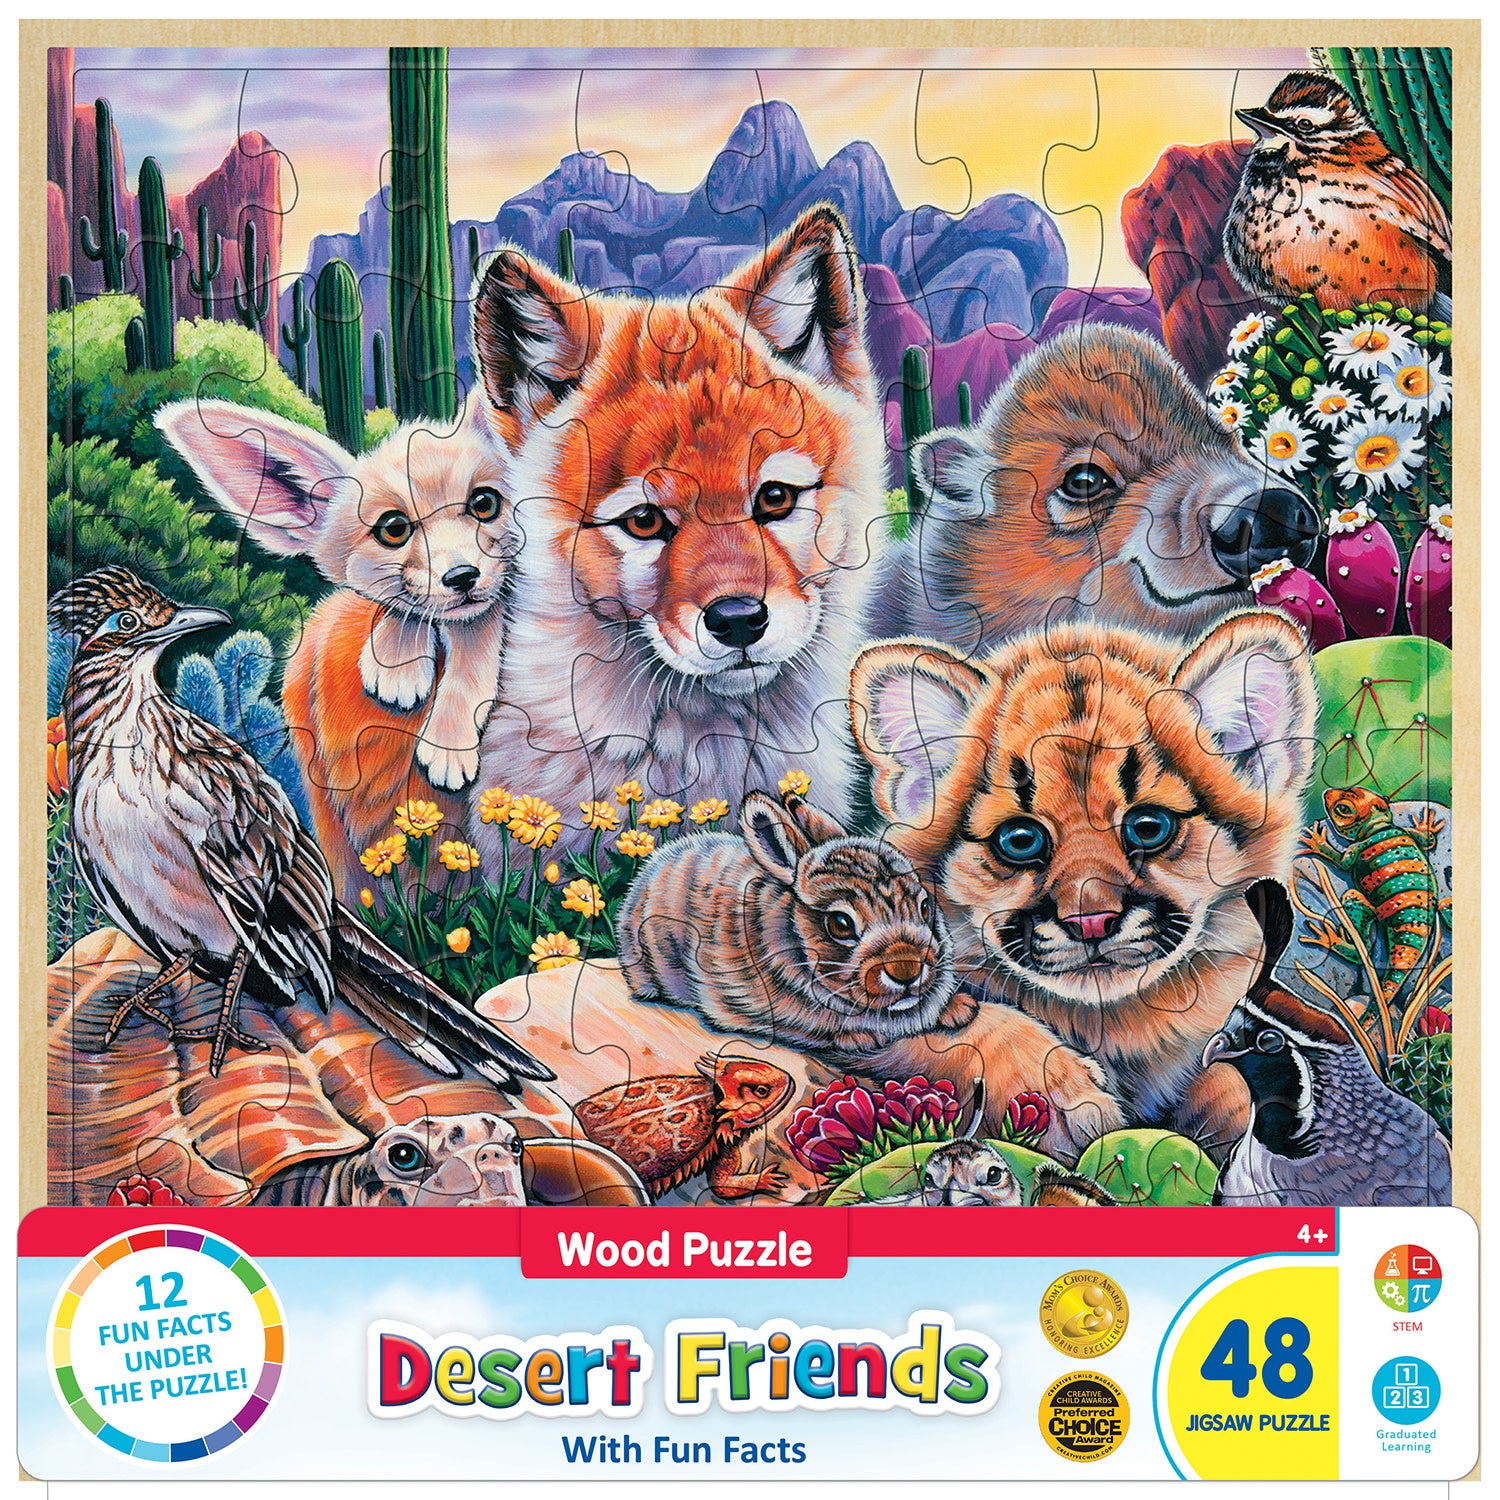 Wood Fun Facts - Desert Friends 48 Piece Wood Jigsaw Puzzle